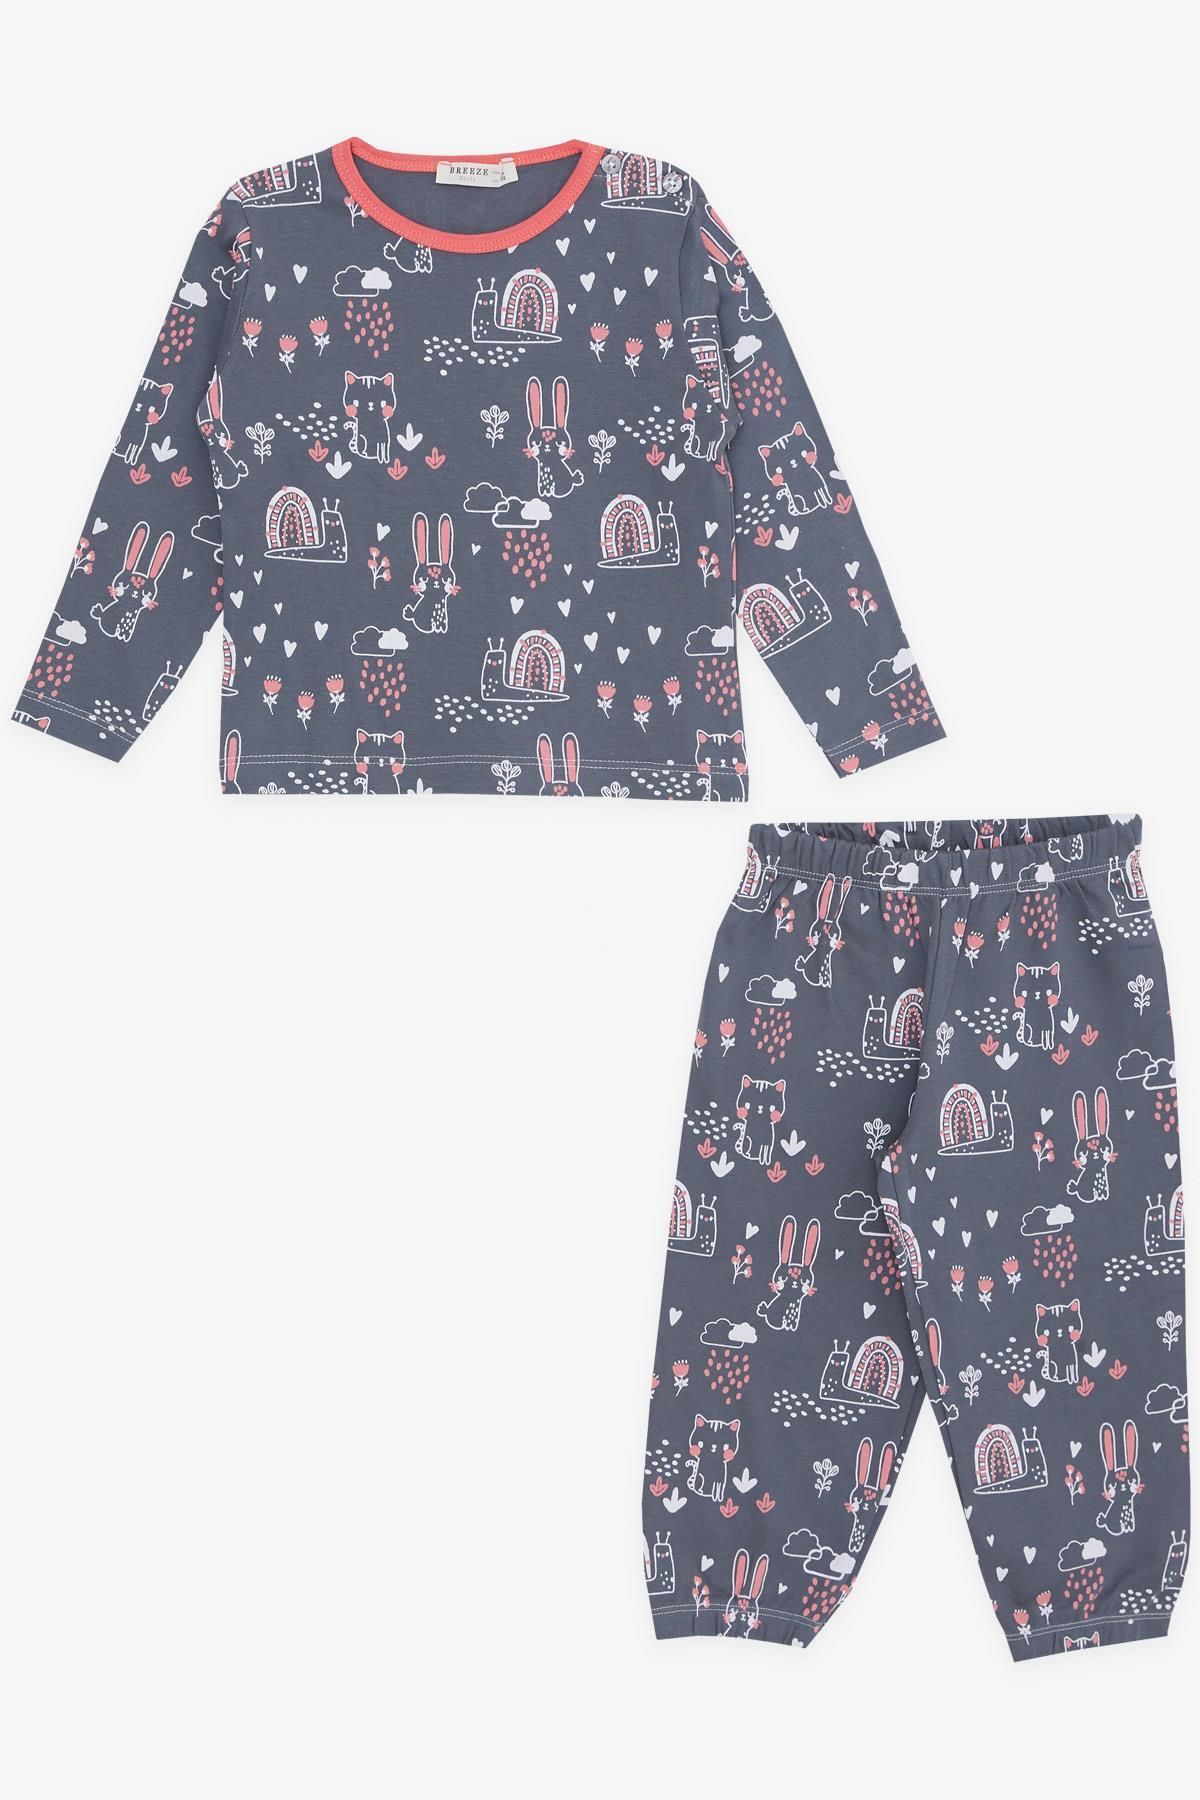 Breeze Kız Bebek Pijama Takımı Hayvancık Desenli Doğa Temalı 9 Ay-3 Yaş, Füme